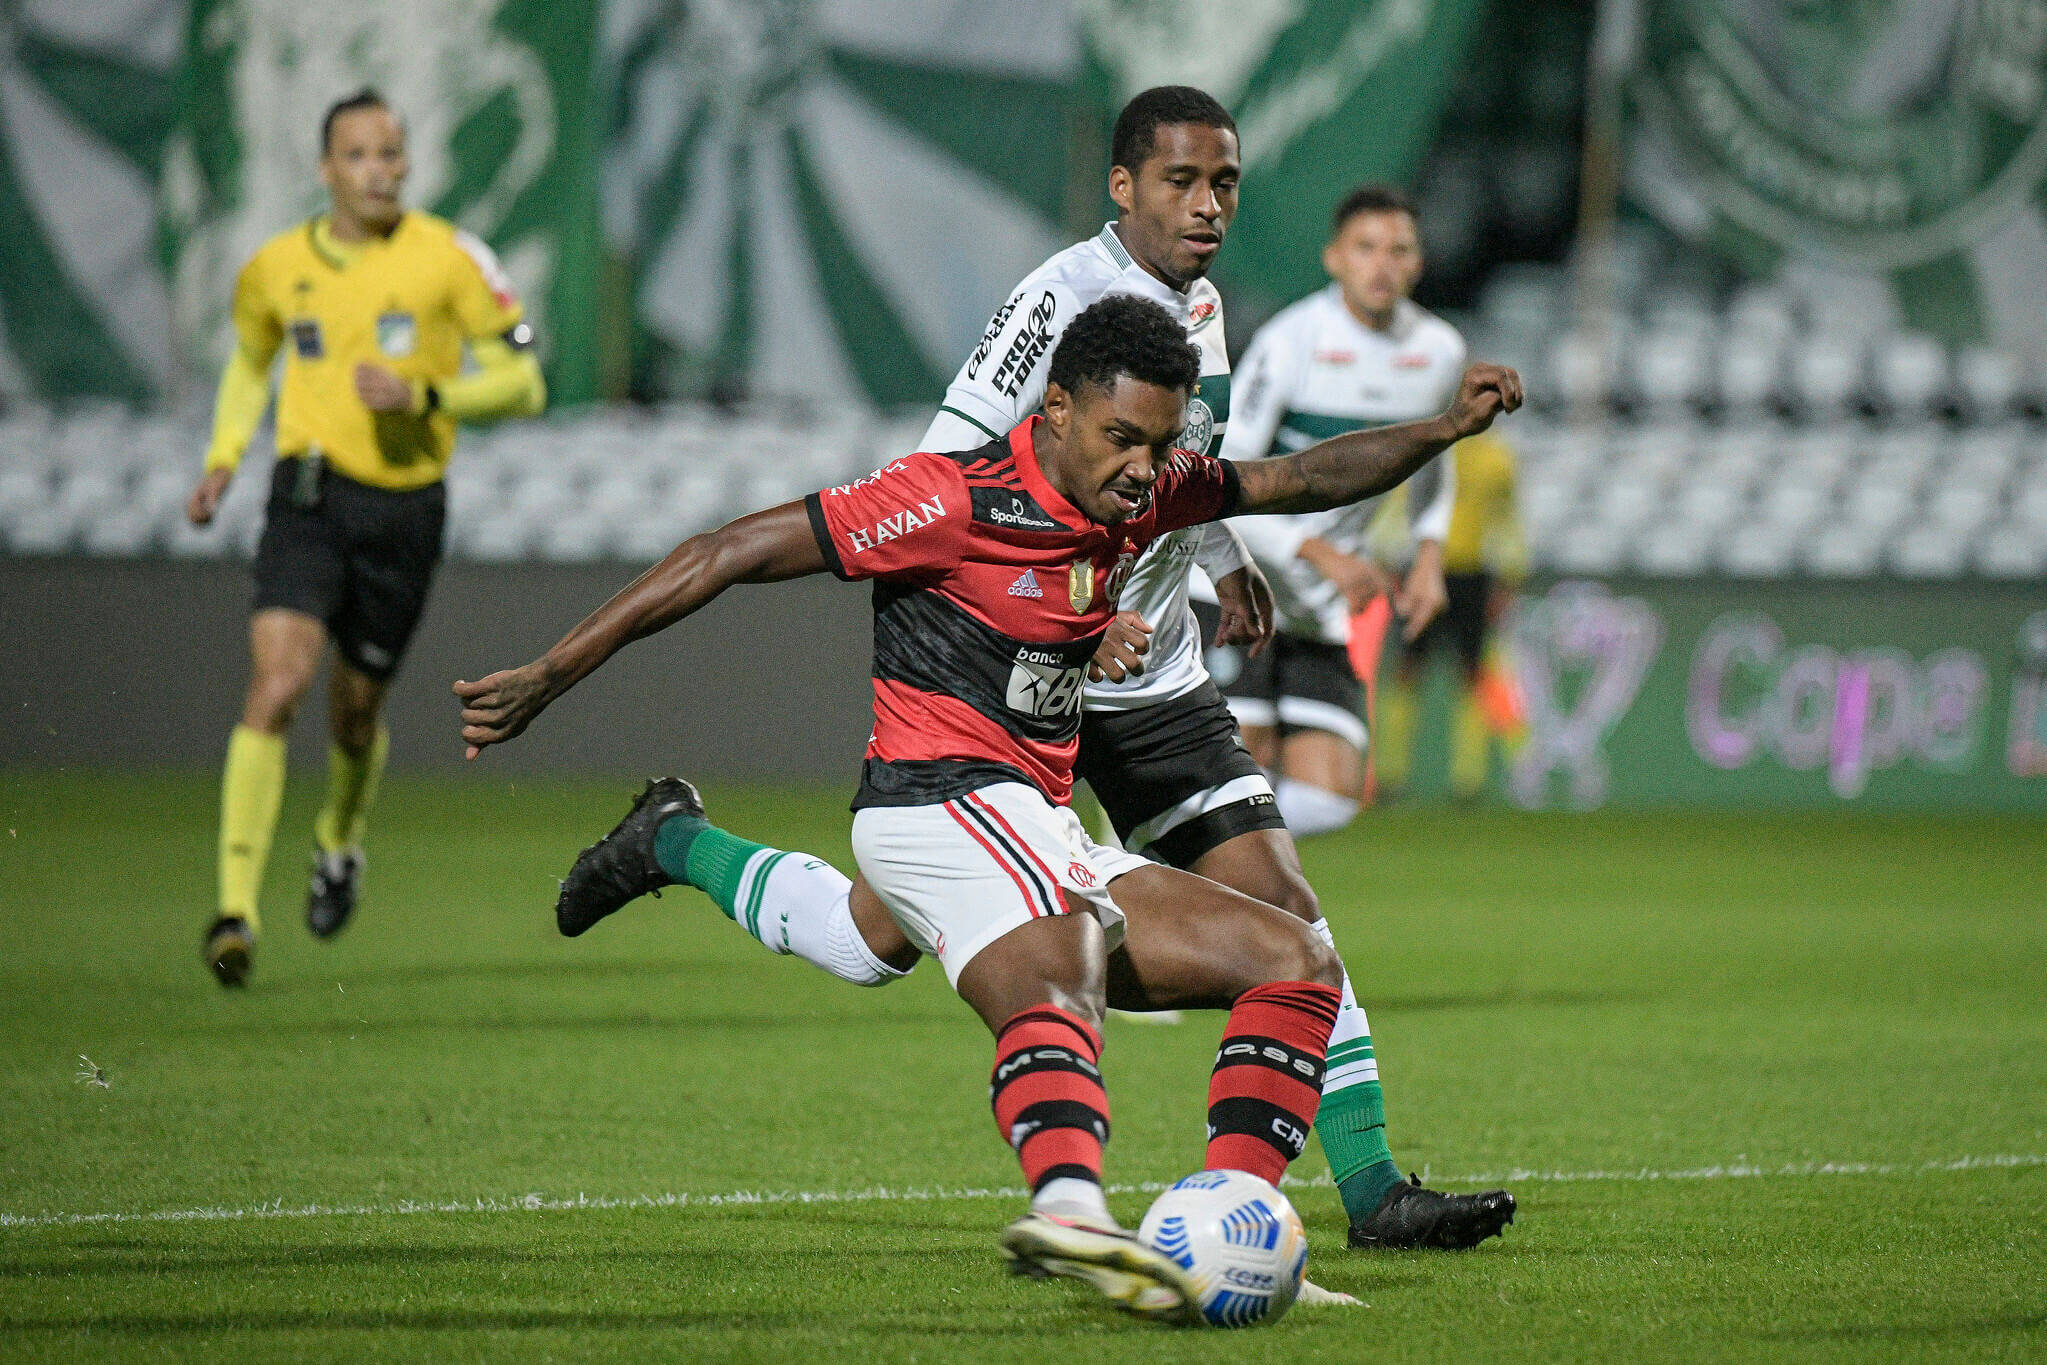 Foto: Alexandre Vidal / Flamengo